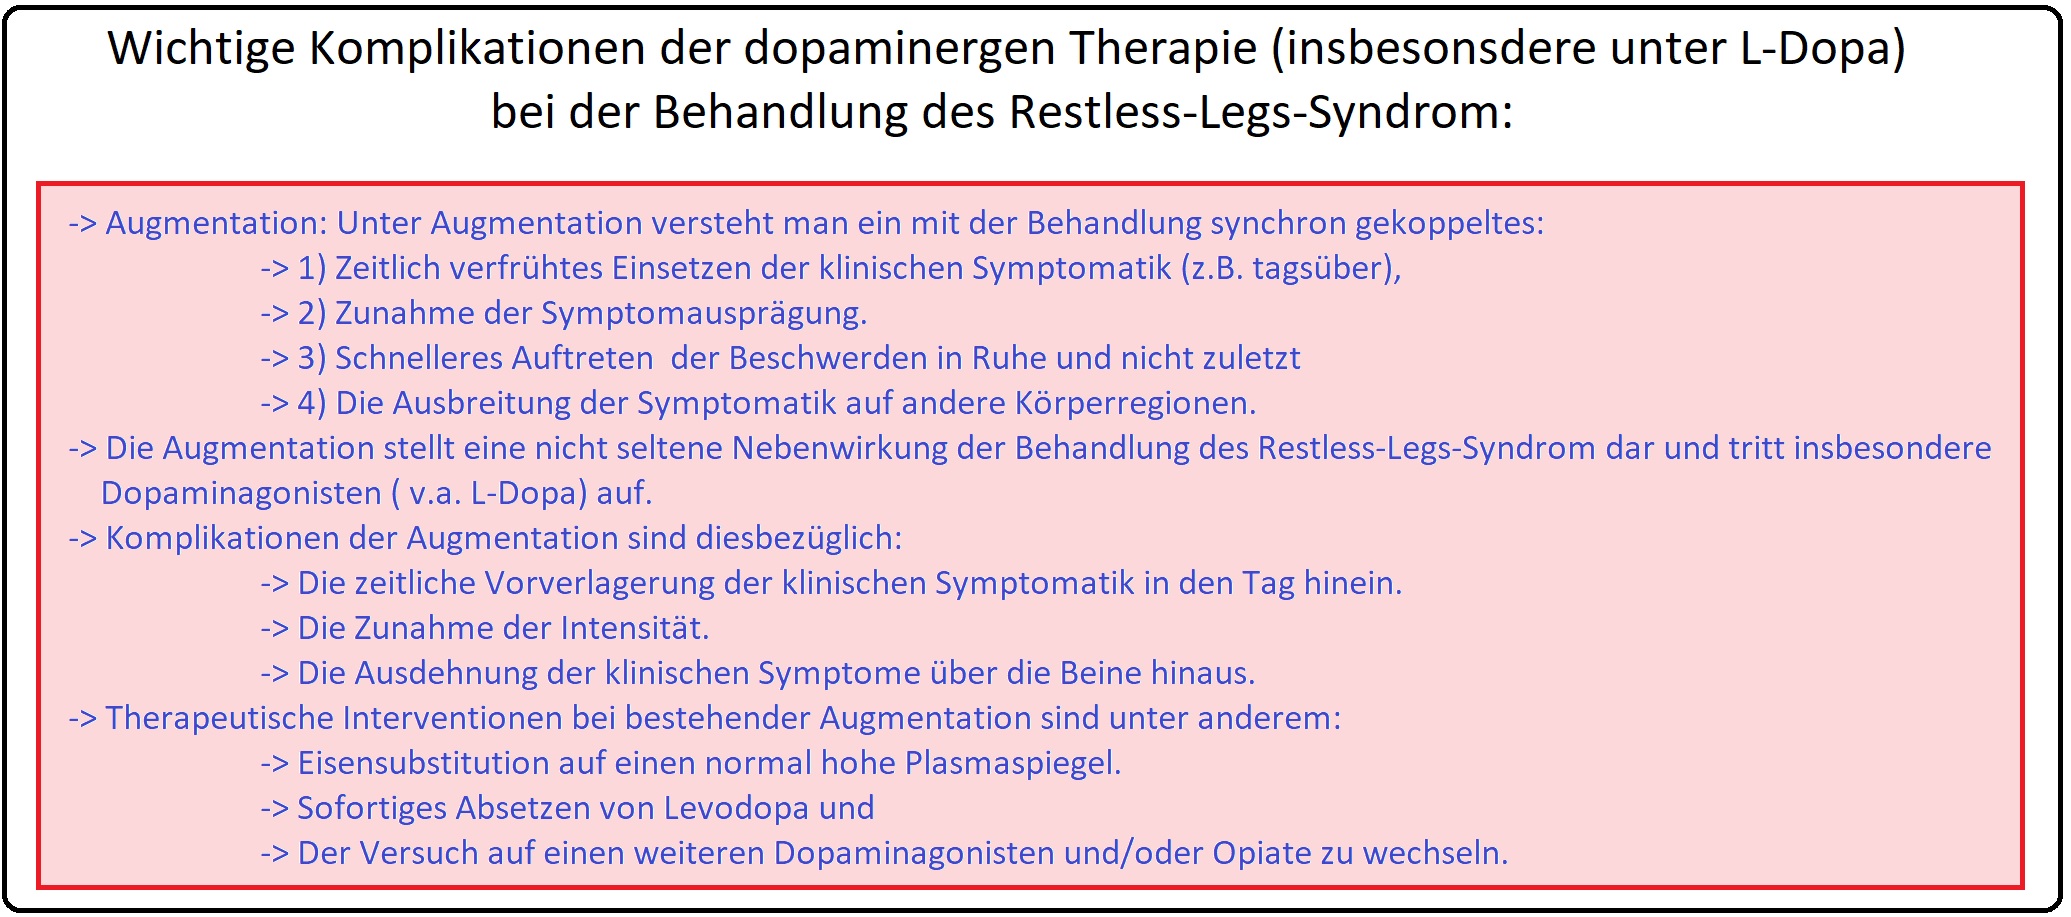 709 Wichtige Komplikationen der dopaminergen Therapie (insbesondere unter L Dopa) bei der Behandlung des RLS